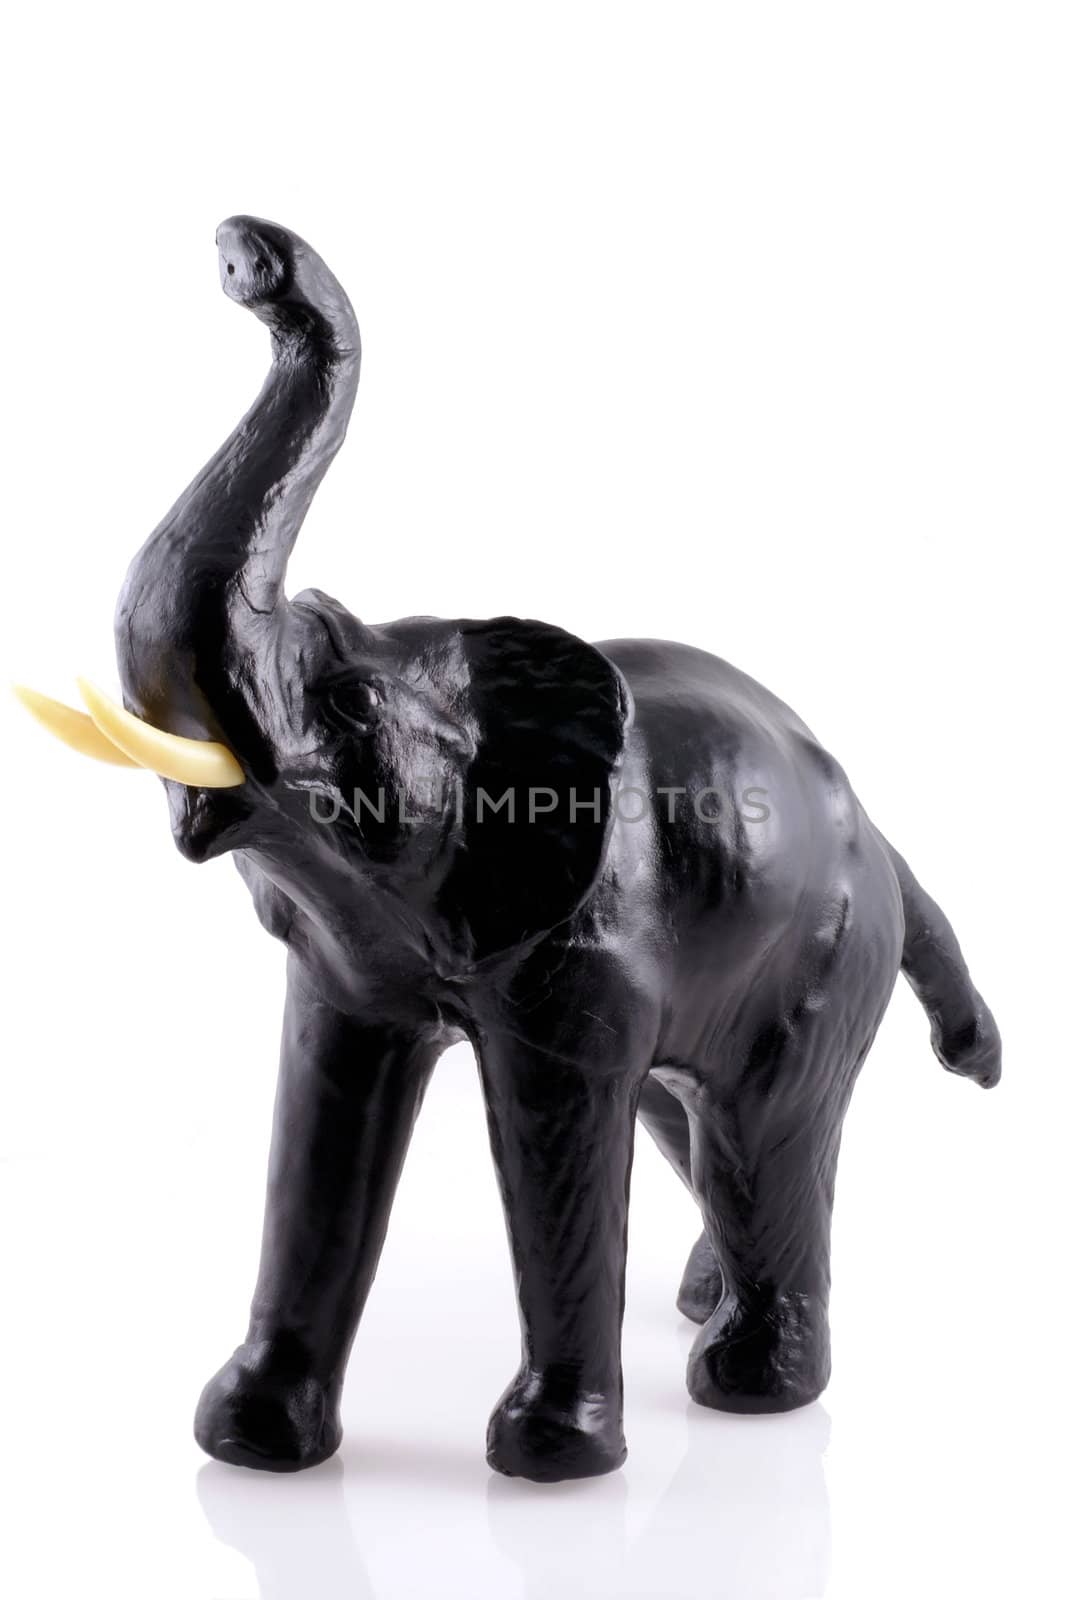 Black elephant. by SasPartout